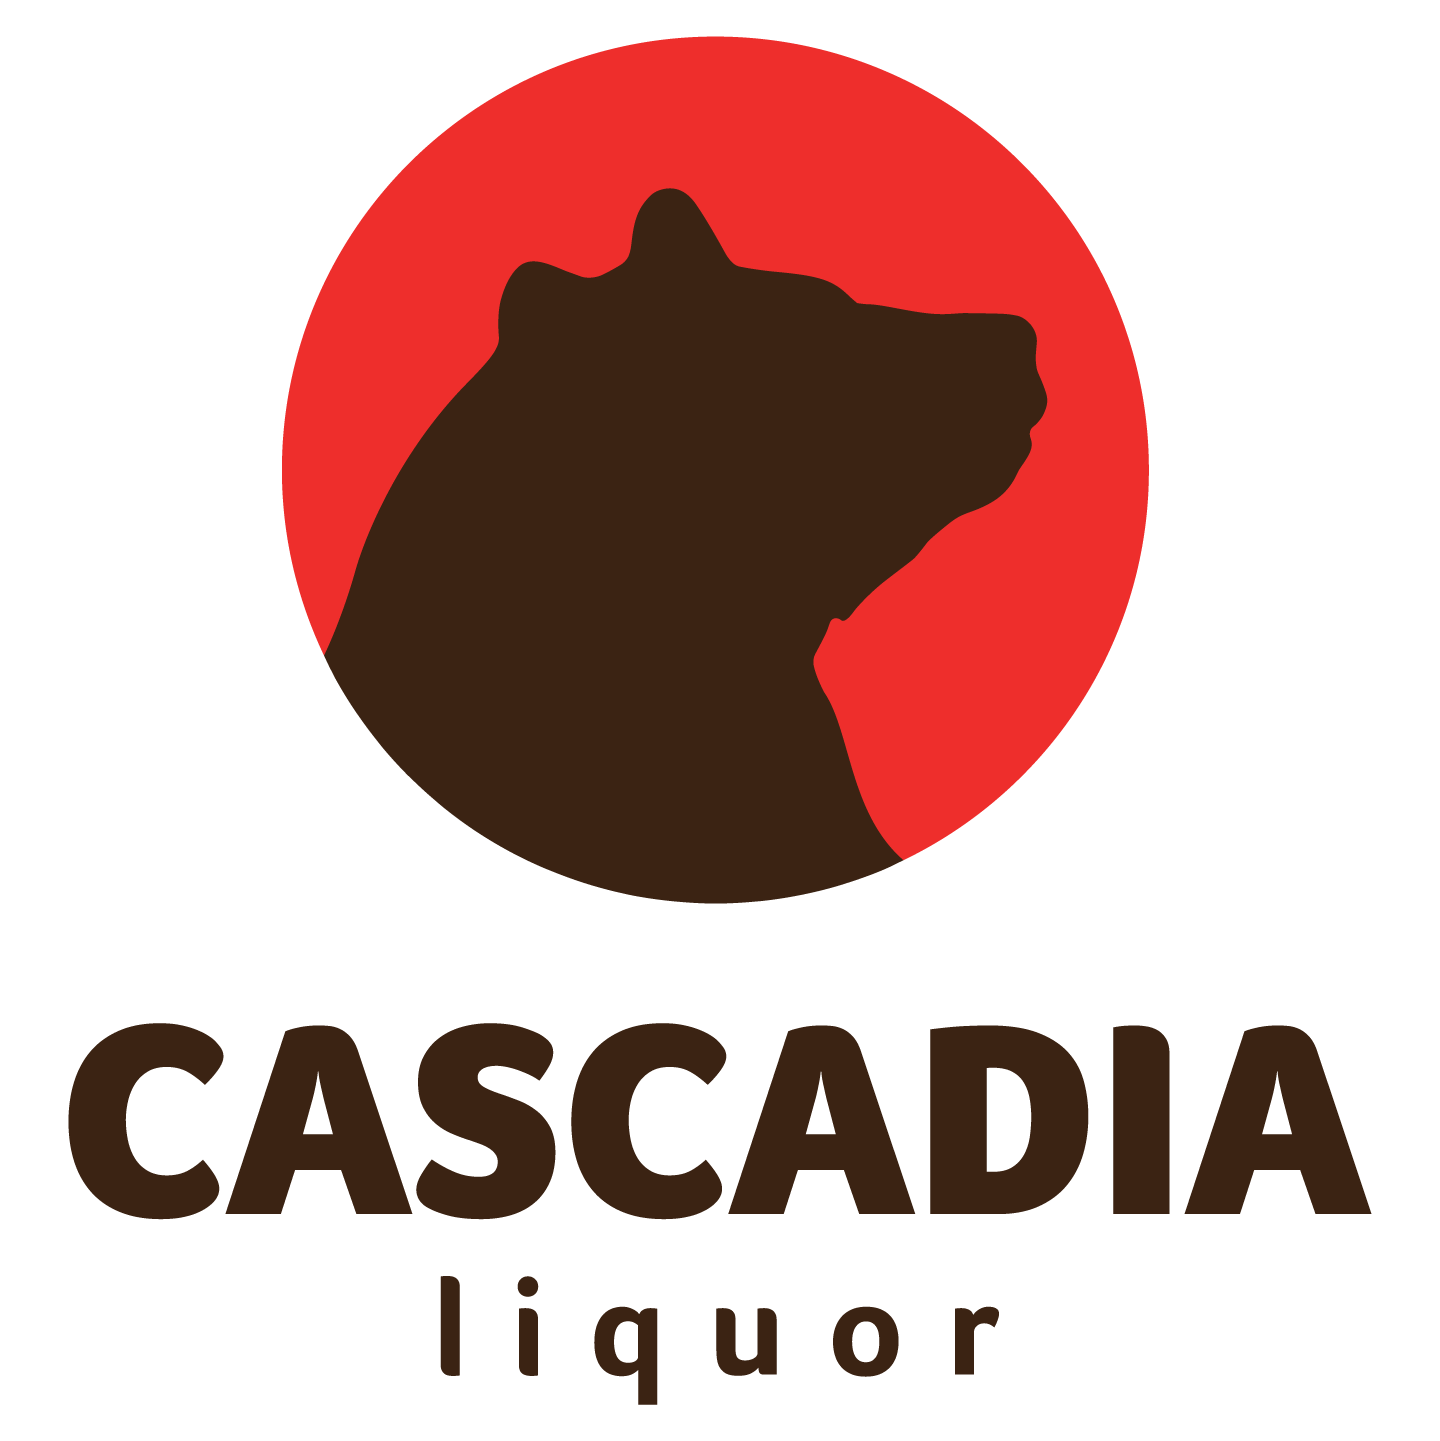 All Liquor Logo - Cascadia Liquor